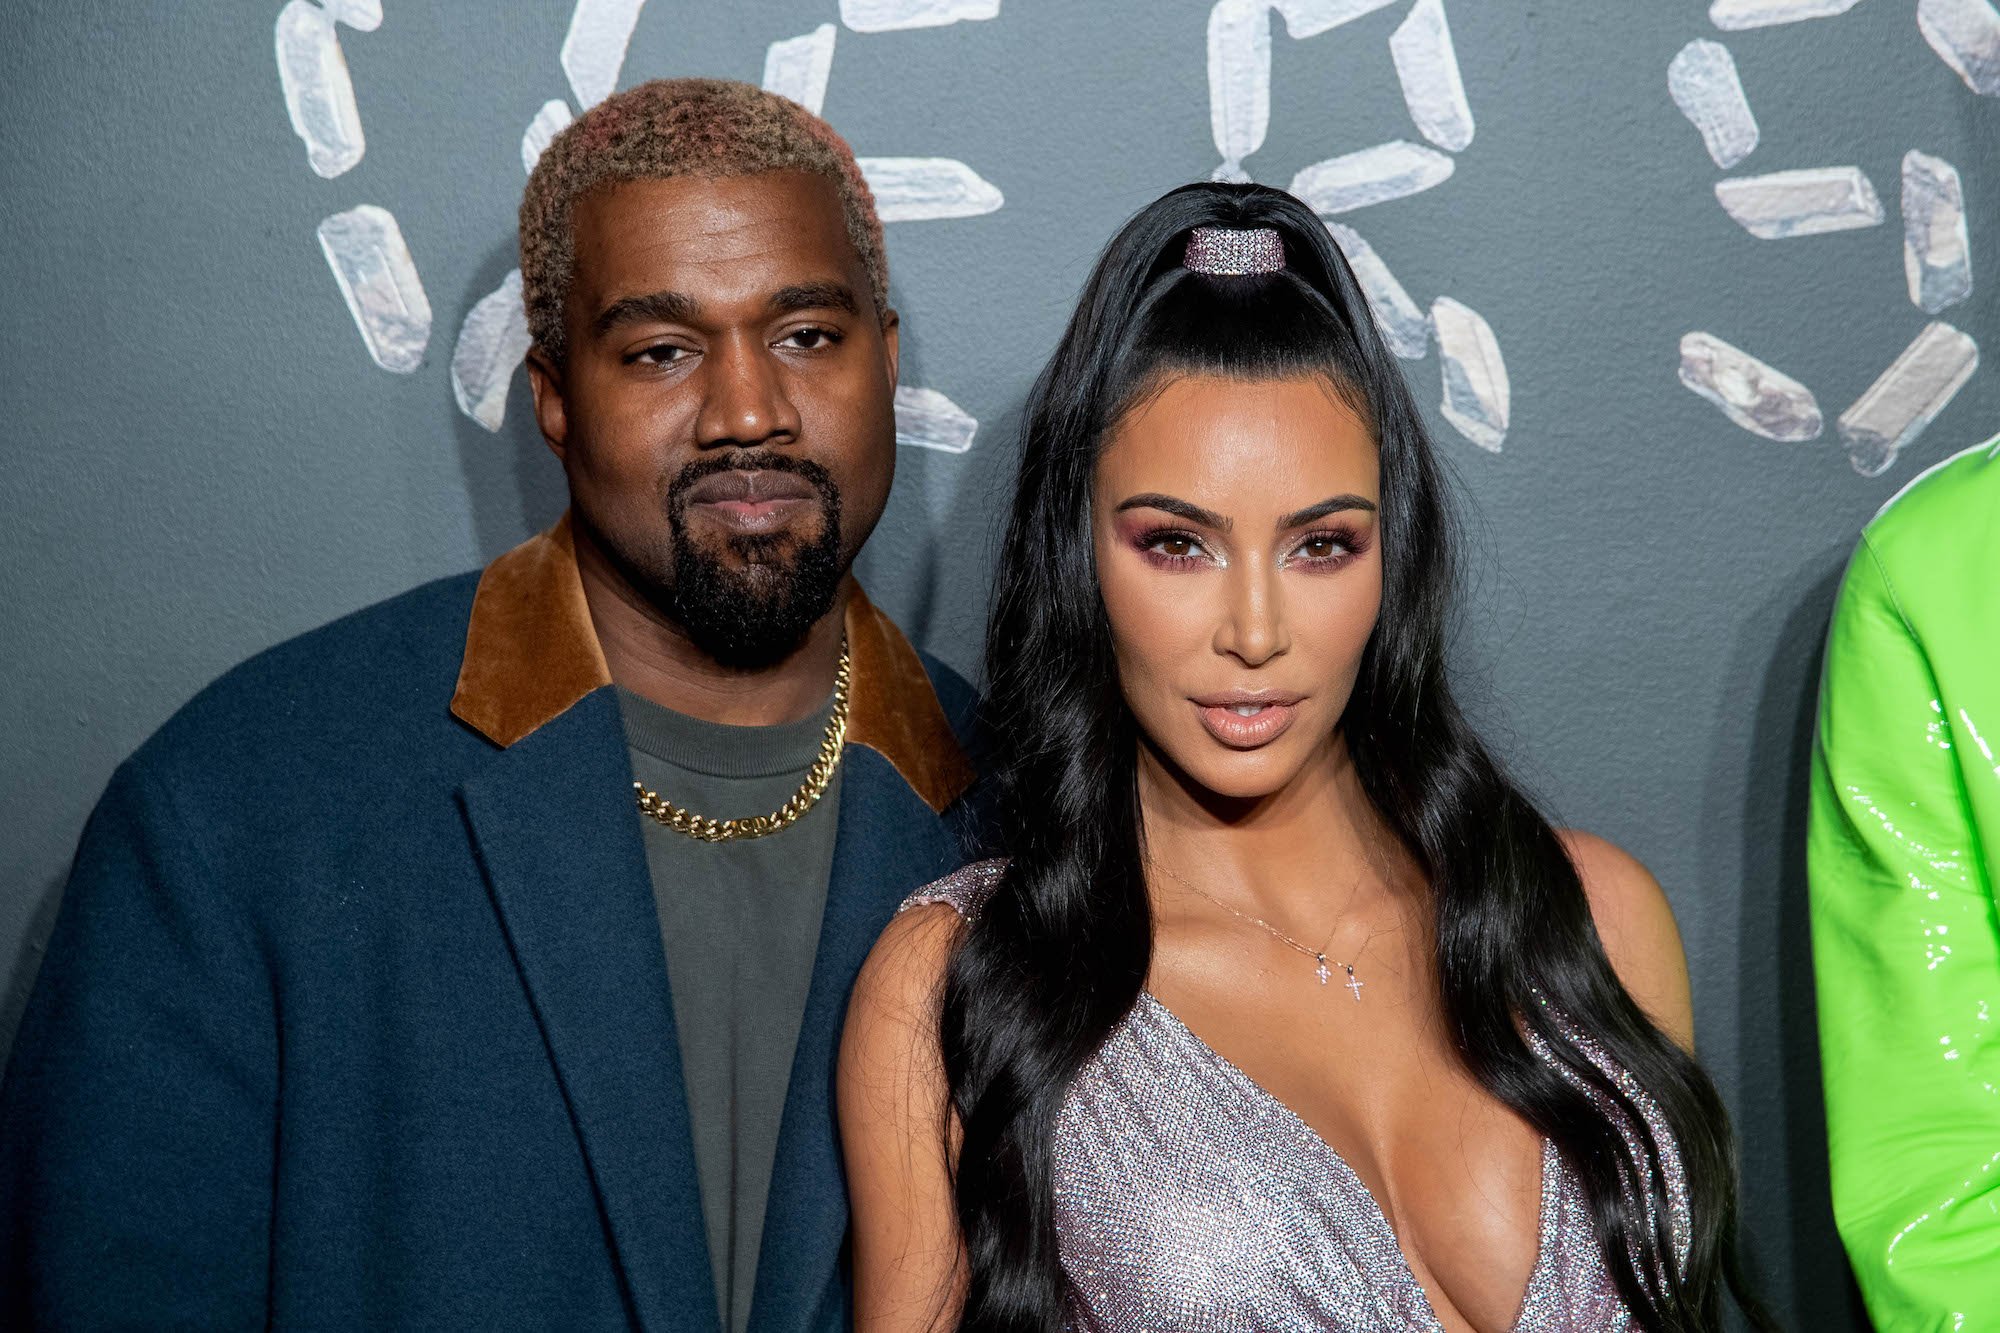 Kanye West and Kim Kardashian West smiling